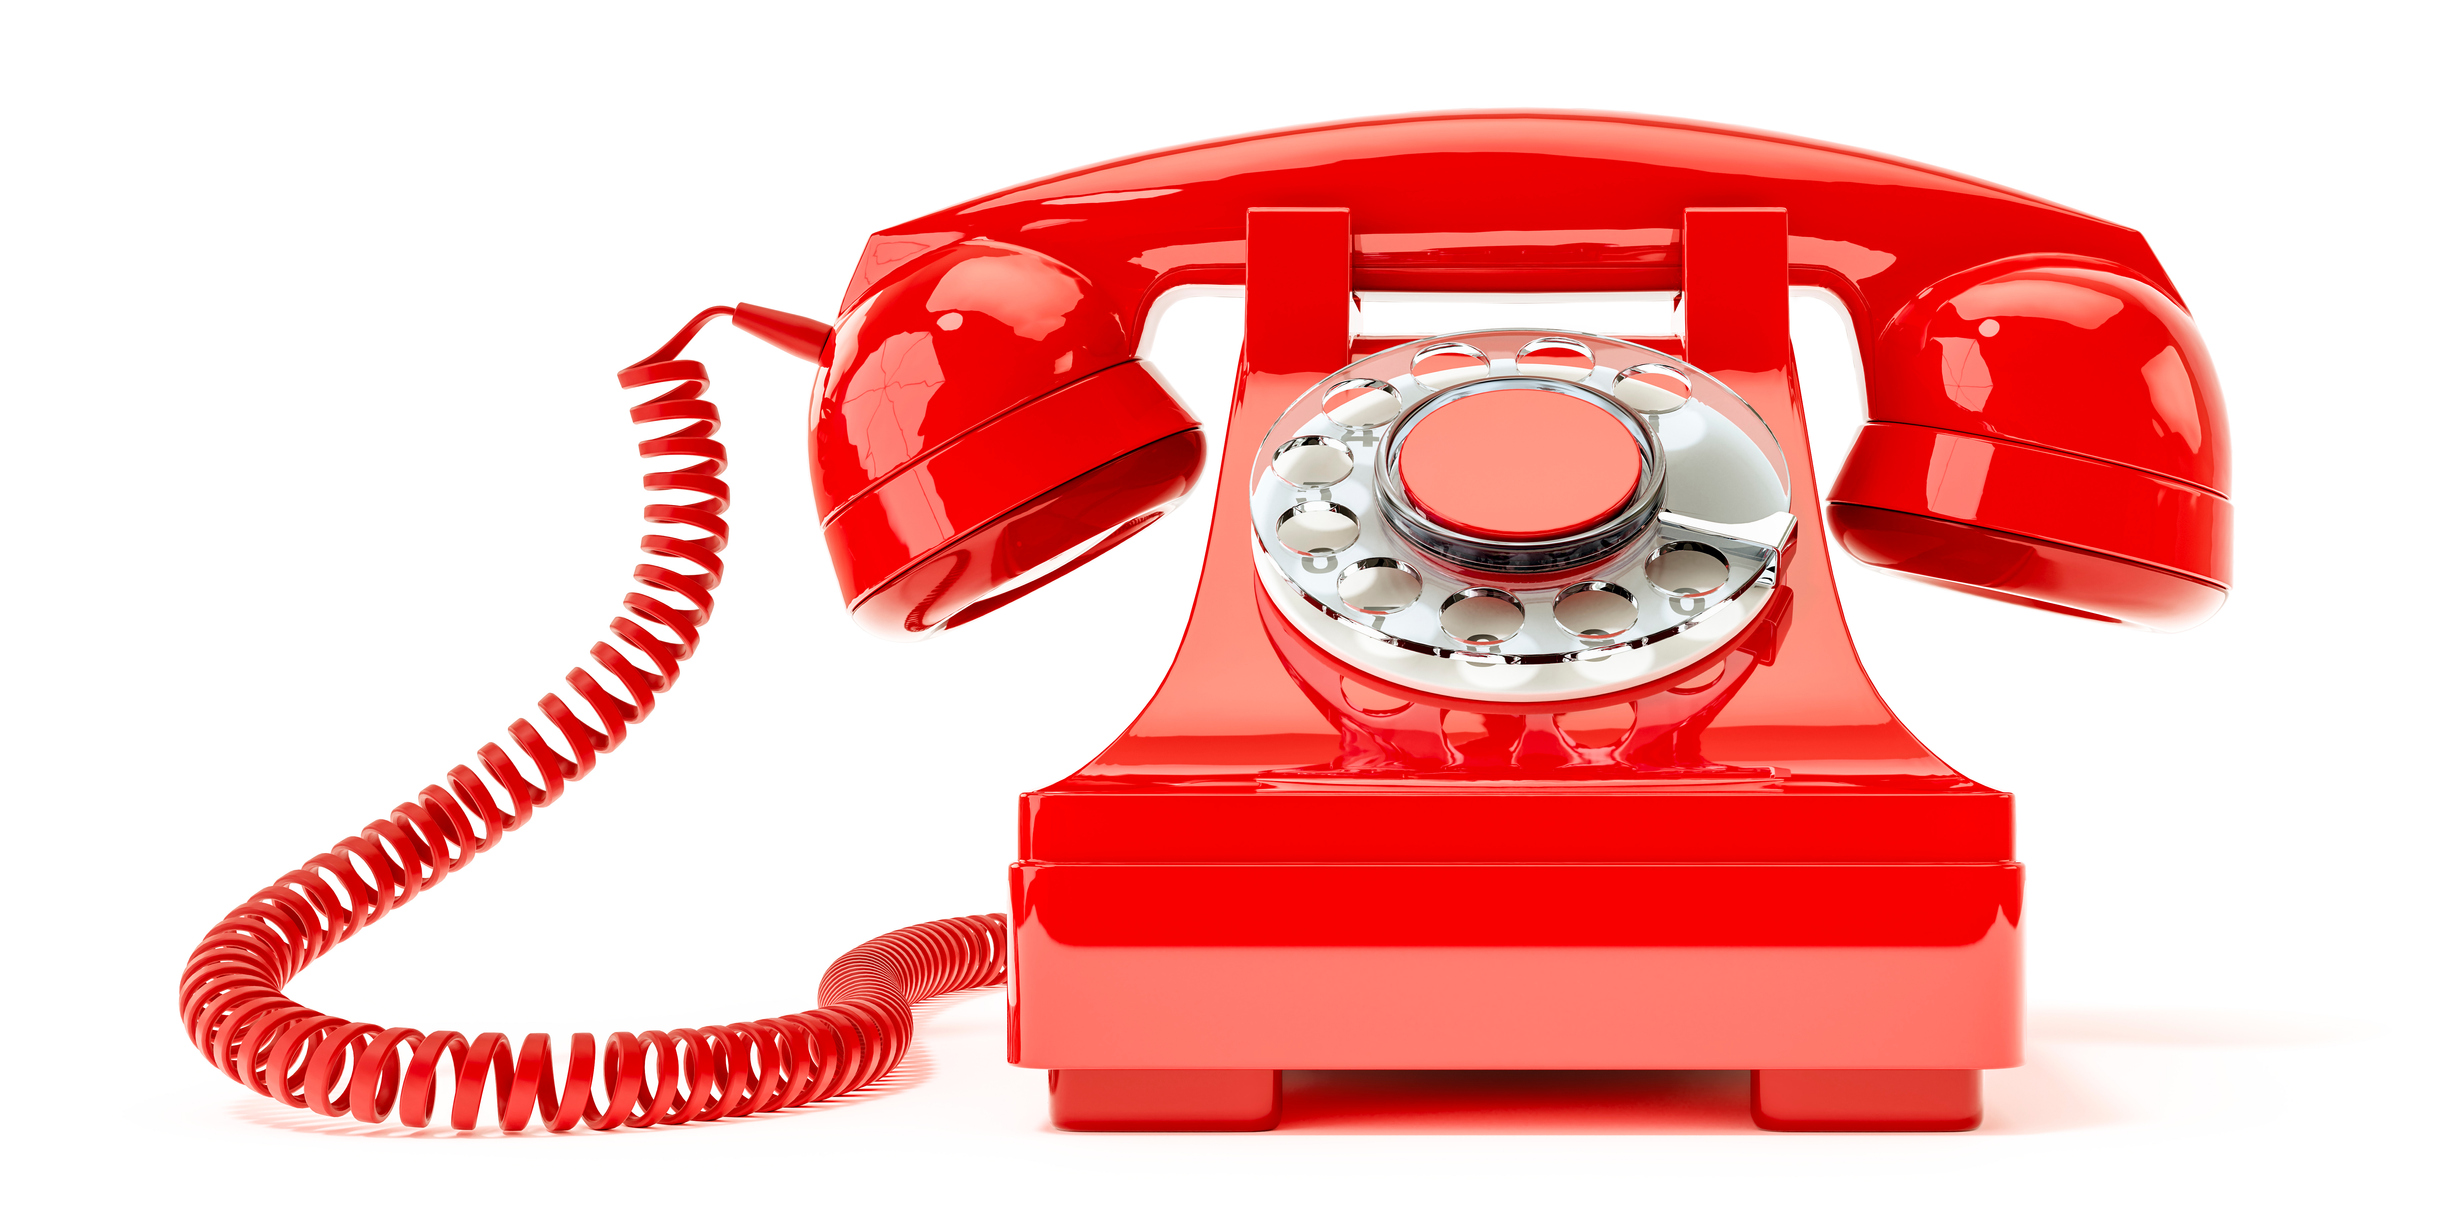 Красный телефон что значит. Красный телефон. Красный сотовый телефон. Красная трубка телефона. Красный телефонный аппарат на прозрачном фоне.